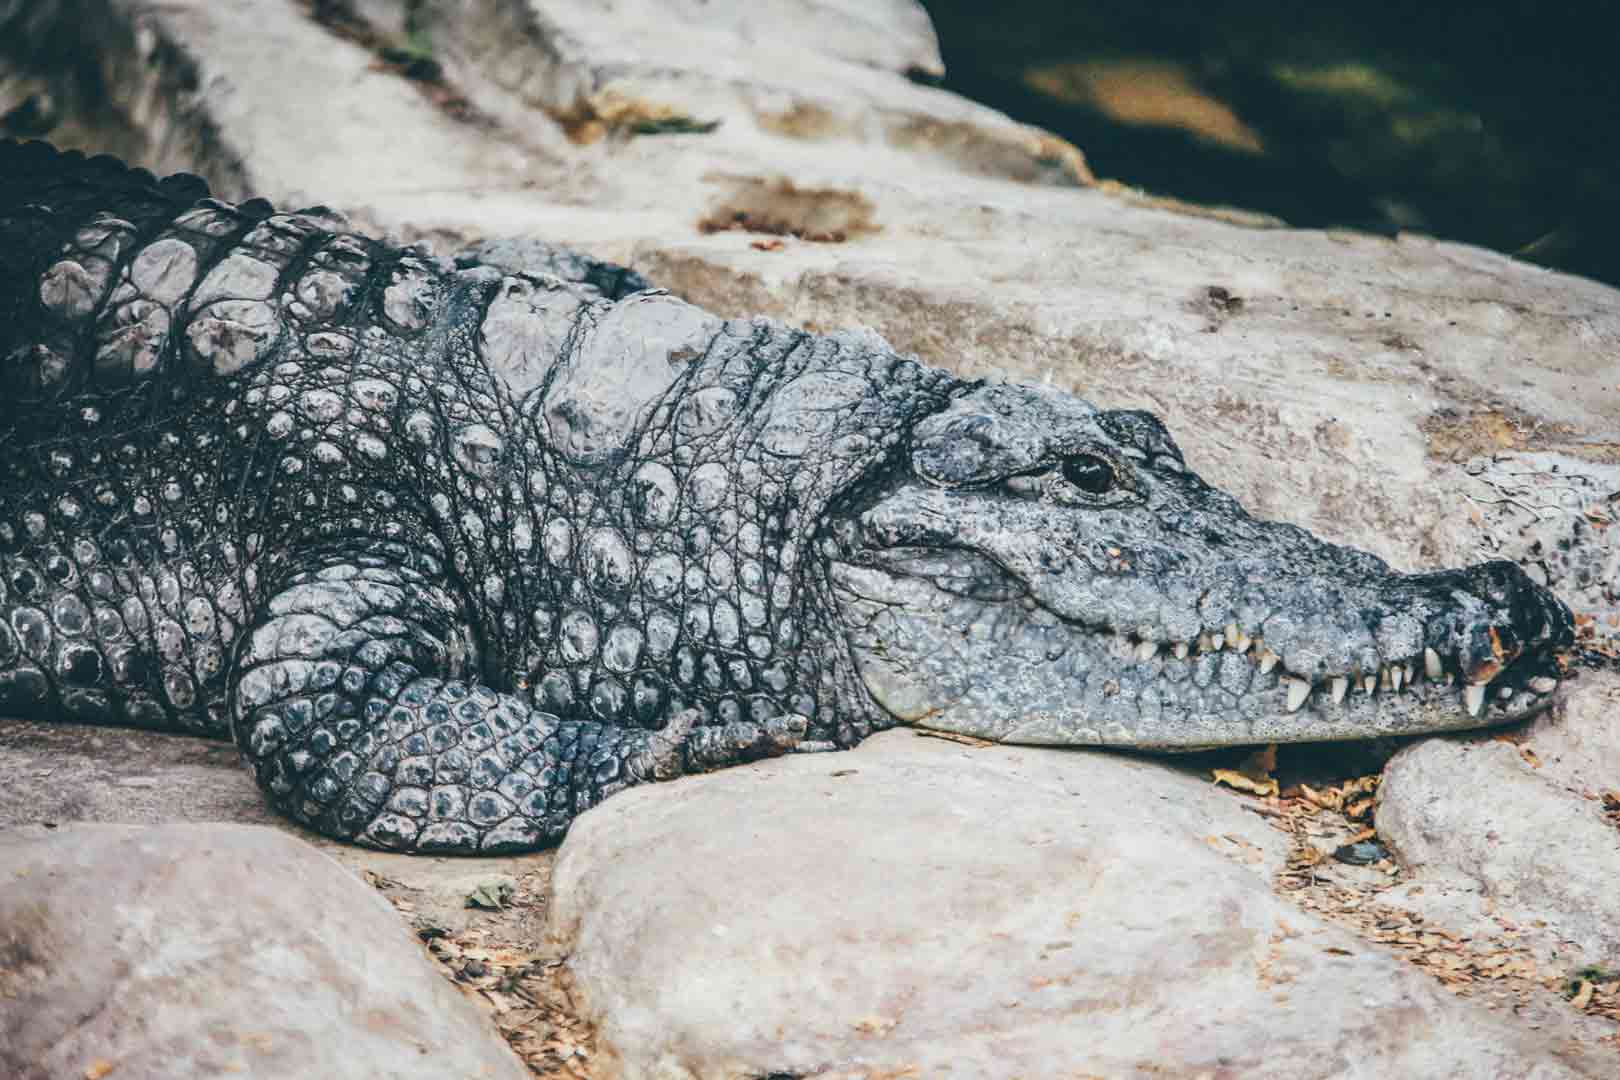 Krokodil: sus devastadores efectos físicos y sociales